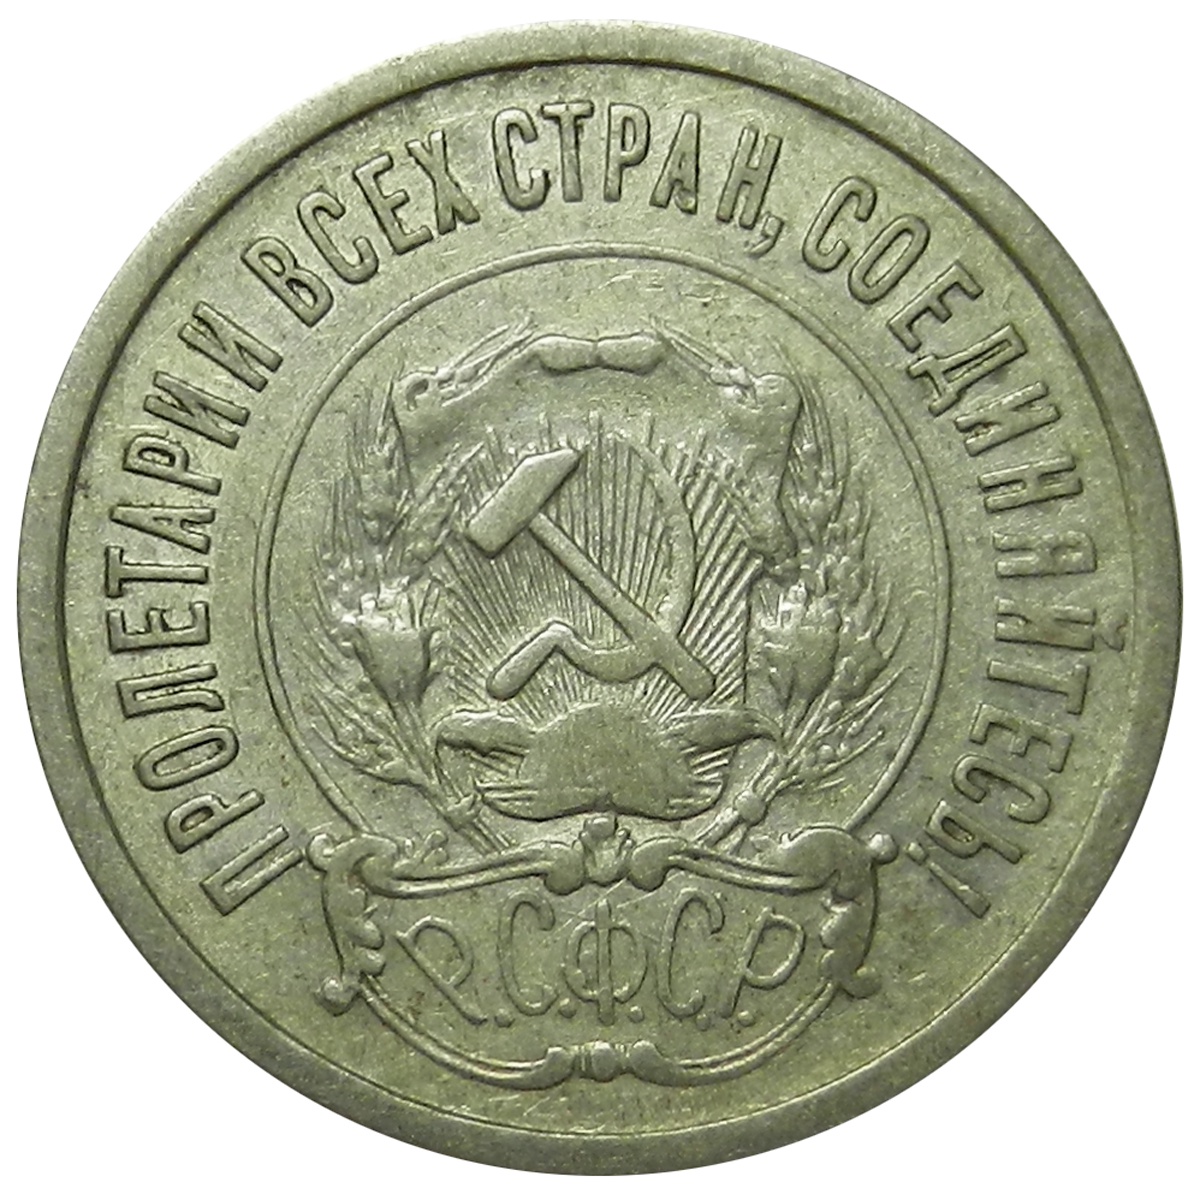 монеты 1921 года фото